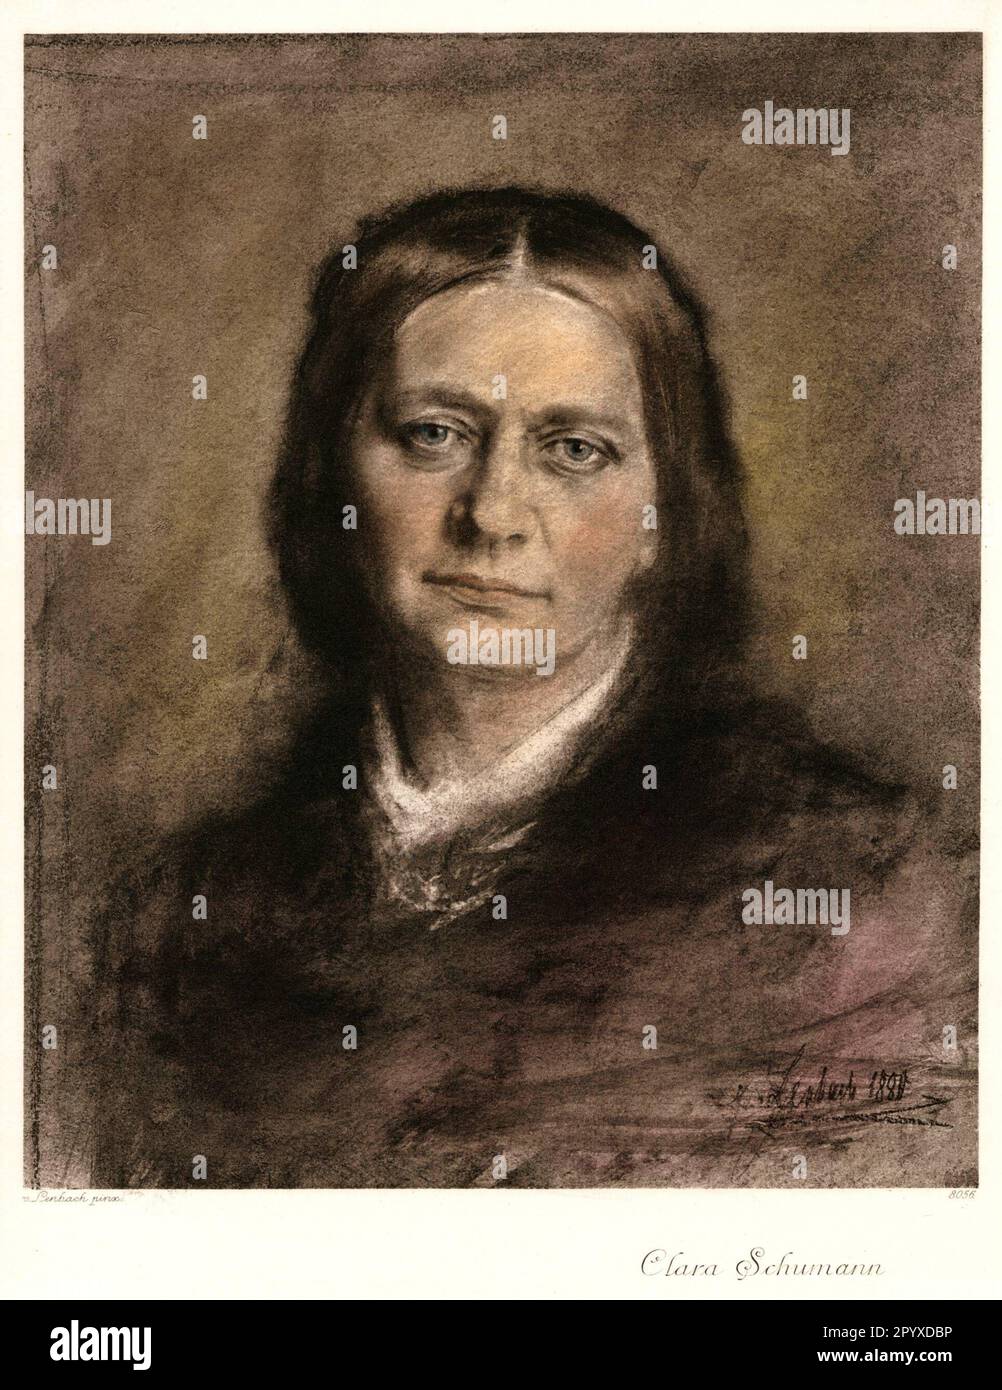 Clara Schumann (1819-1896), pianista e compositore tedesco. Disegno pastello di Franz von Lenbach dal 1880. Foto: Heliogravure, Corpus Imaginum, Hanfstaengl Collection. [traduzione automatica] Foto Stock